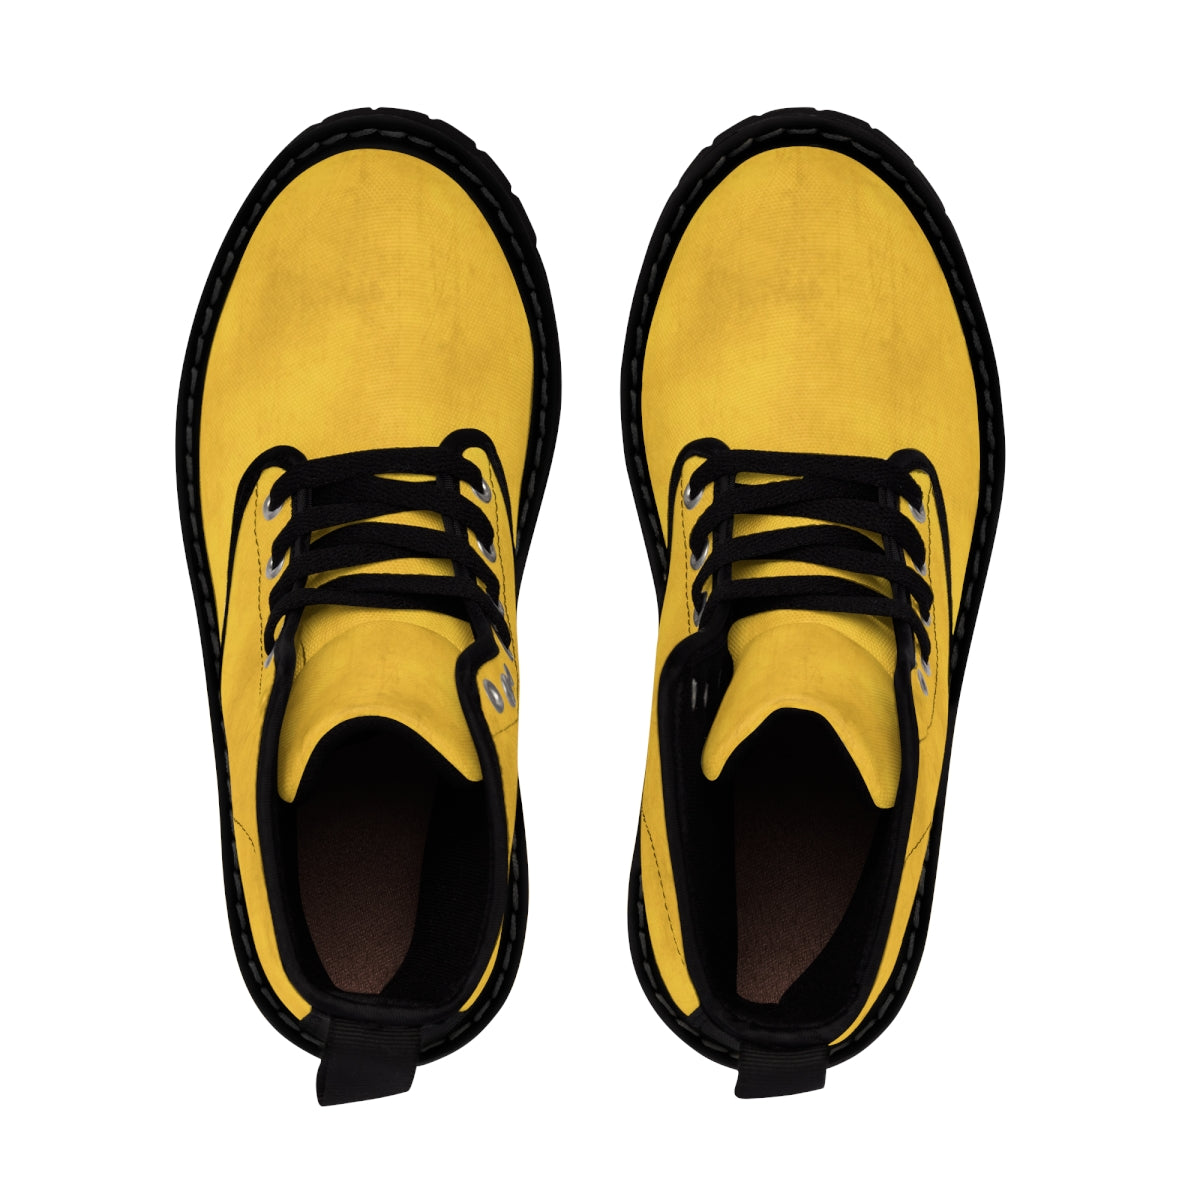 Autumn Yellow Boots